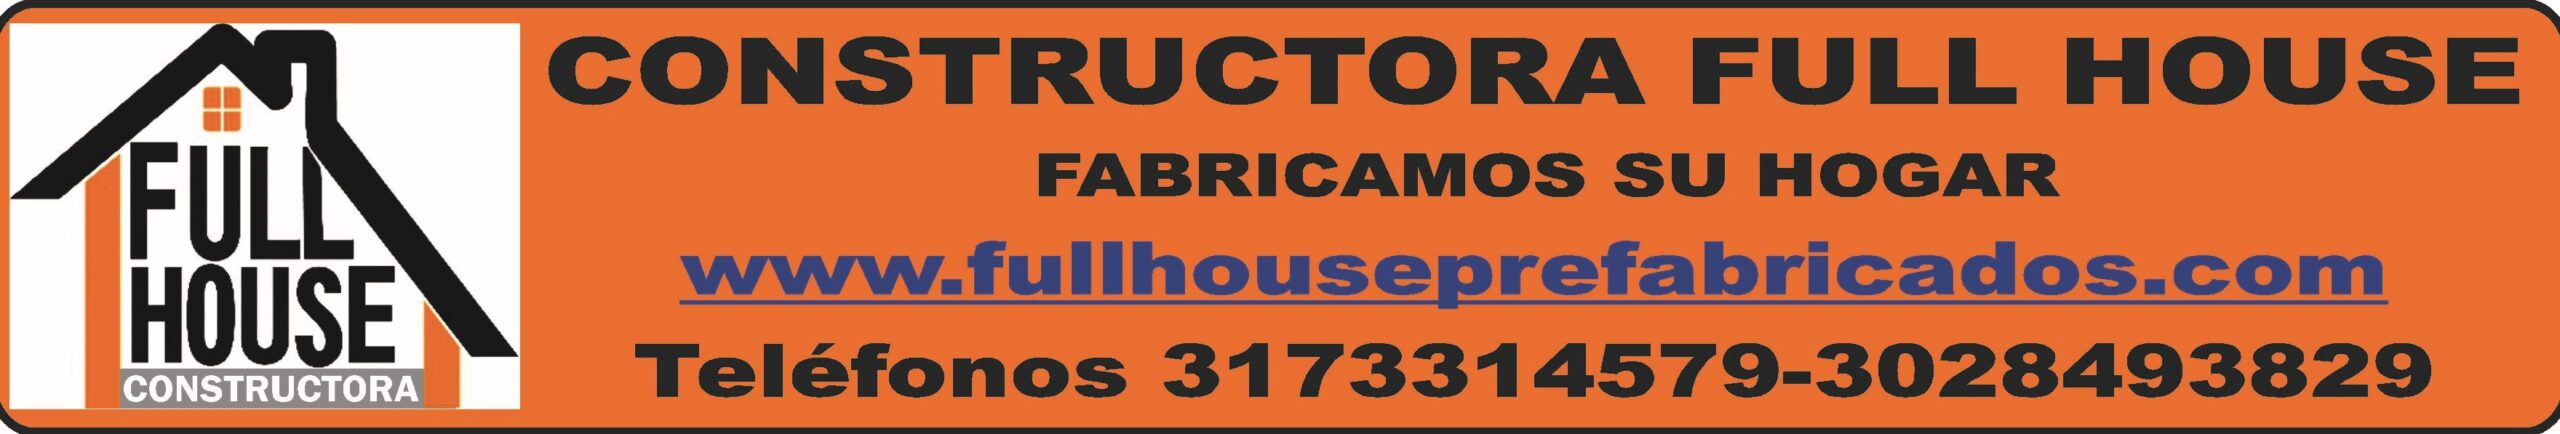 fullhouseprefabricados.com